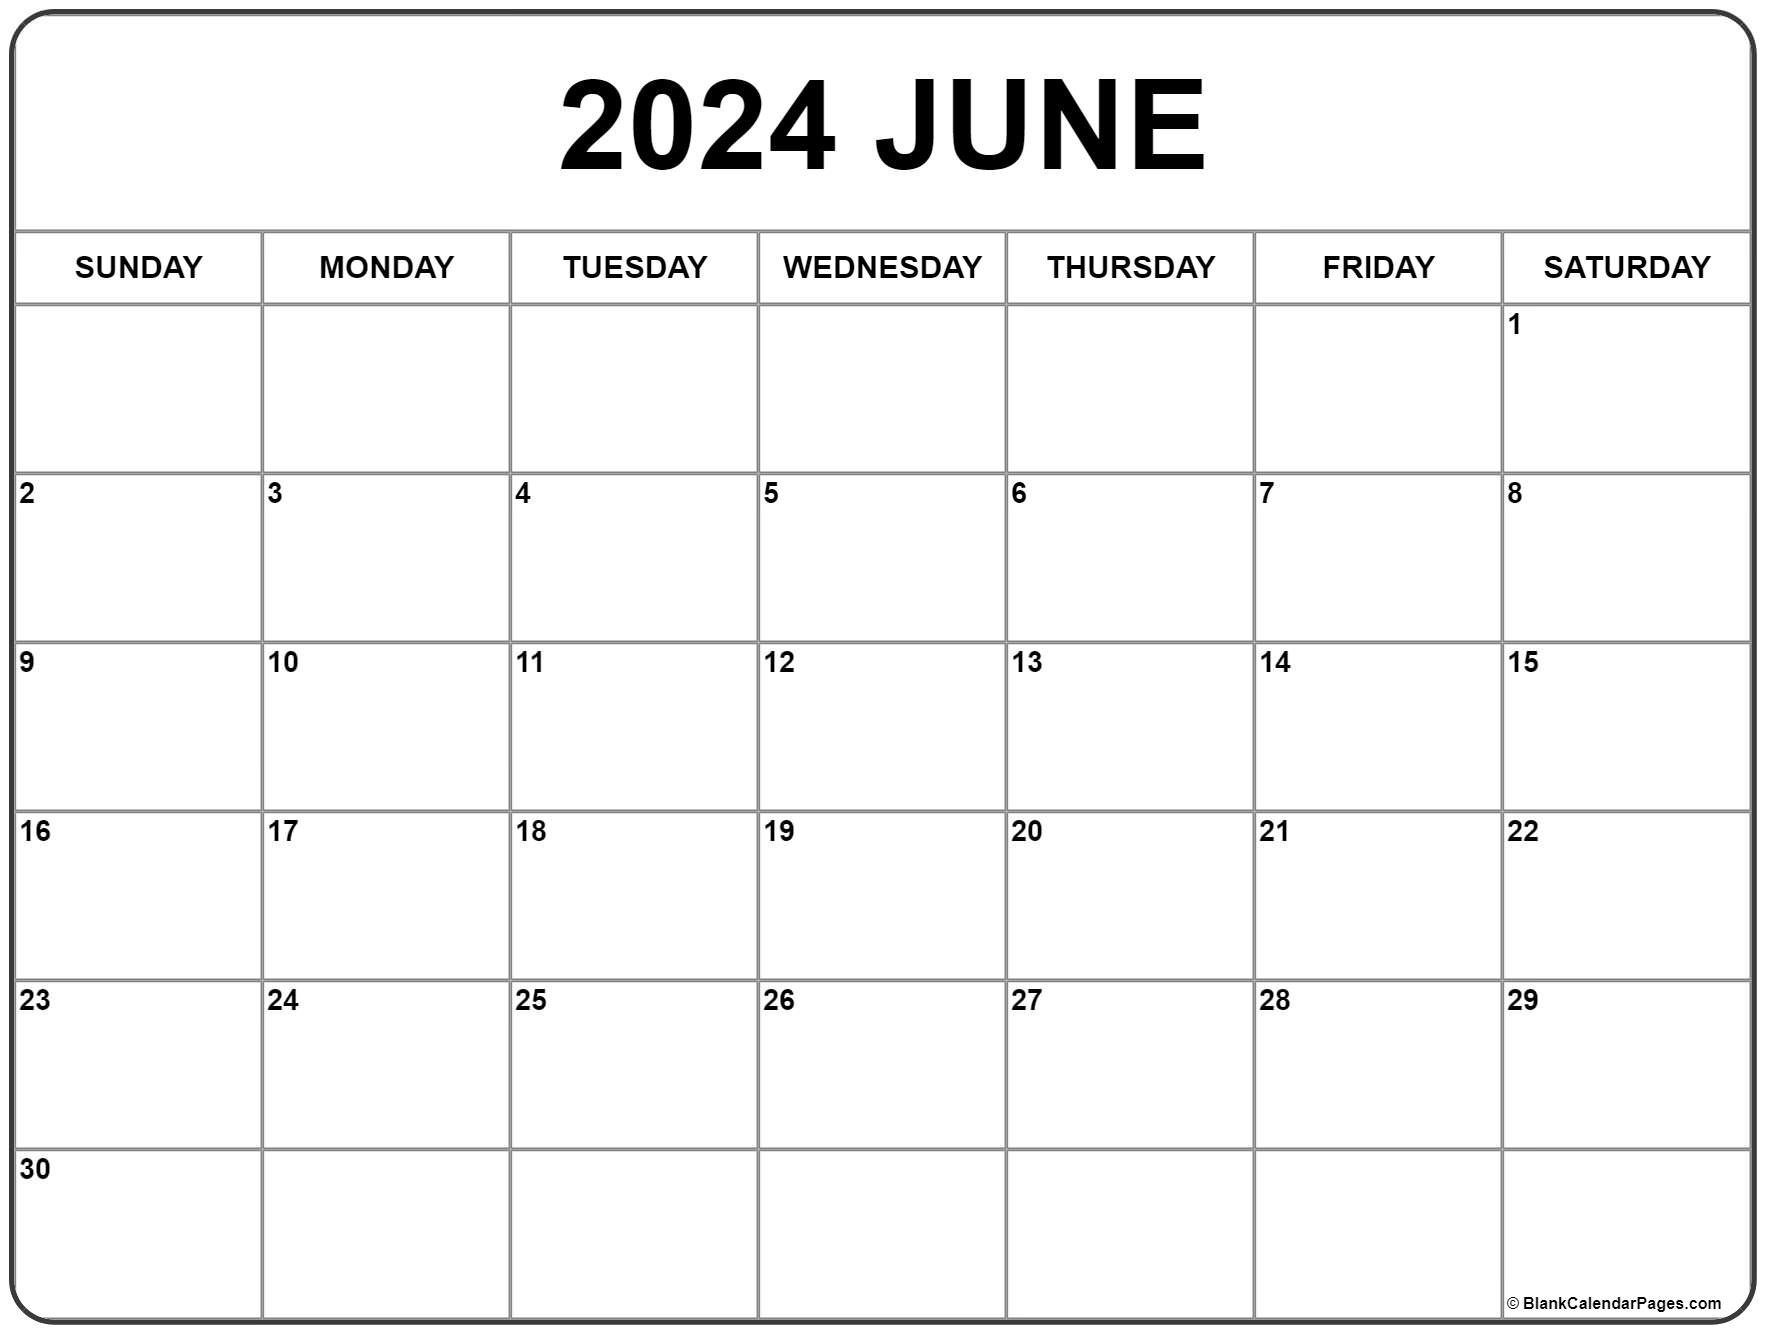 June 2024 Calendar | Free Printable Calendar regarding June 2024 Calendar Free Download